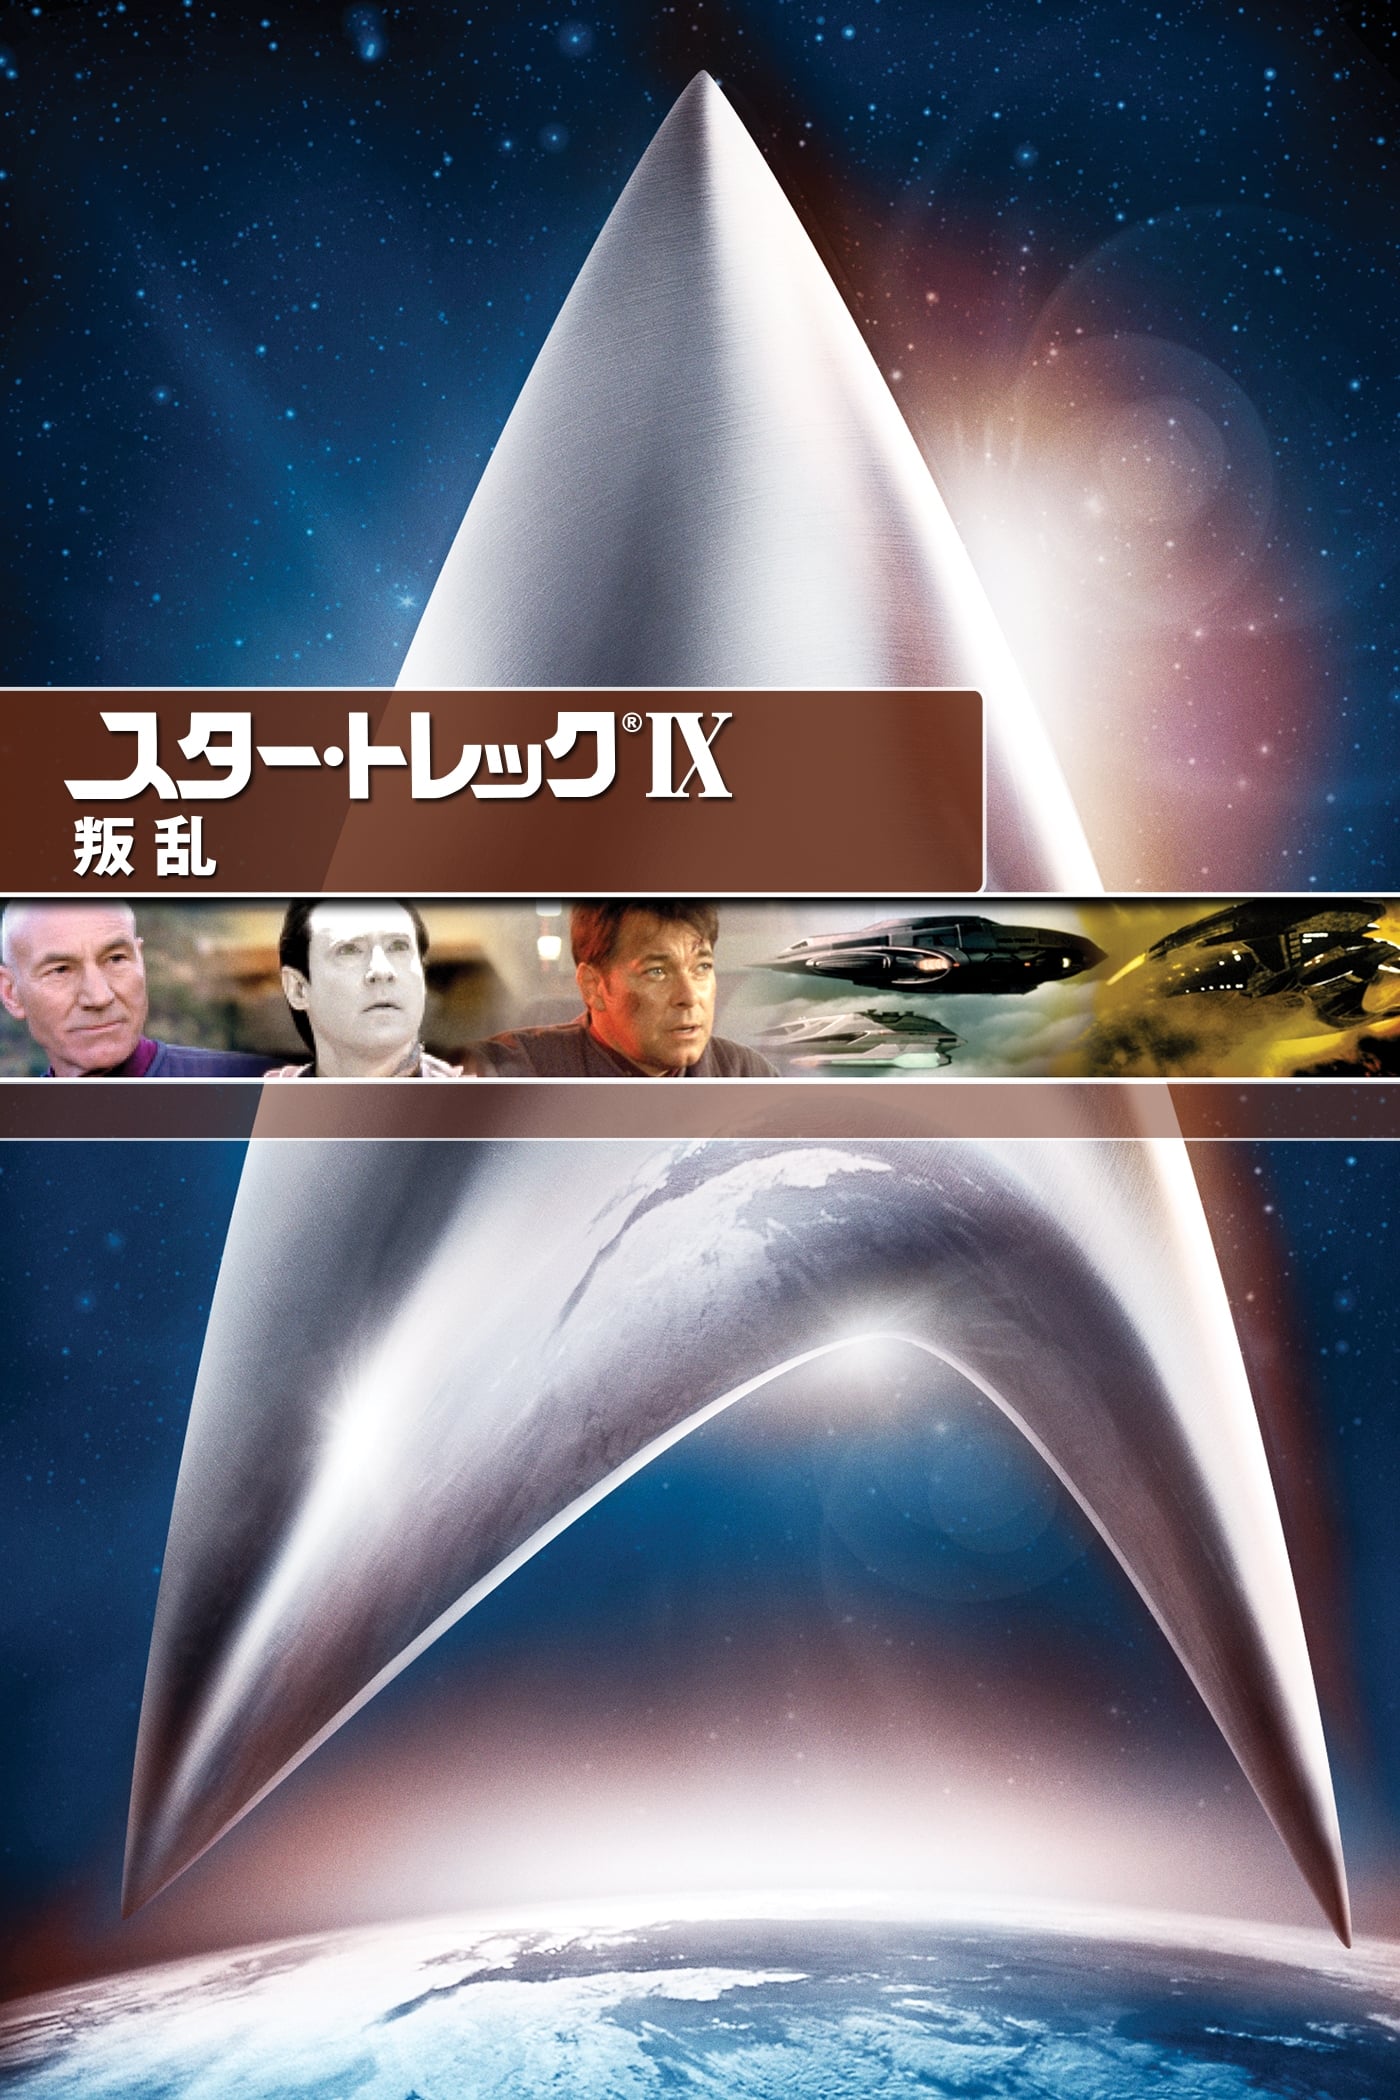 Star Trek: Insurrection Movie poster